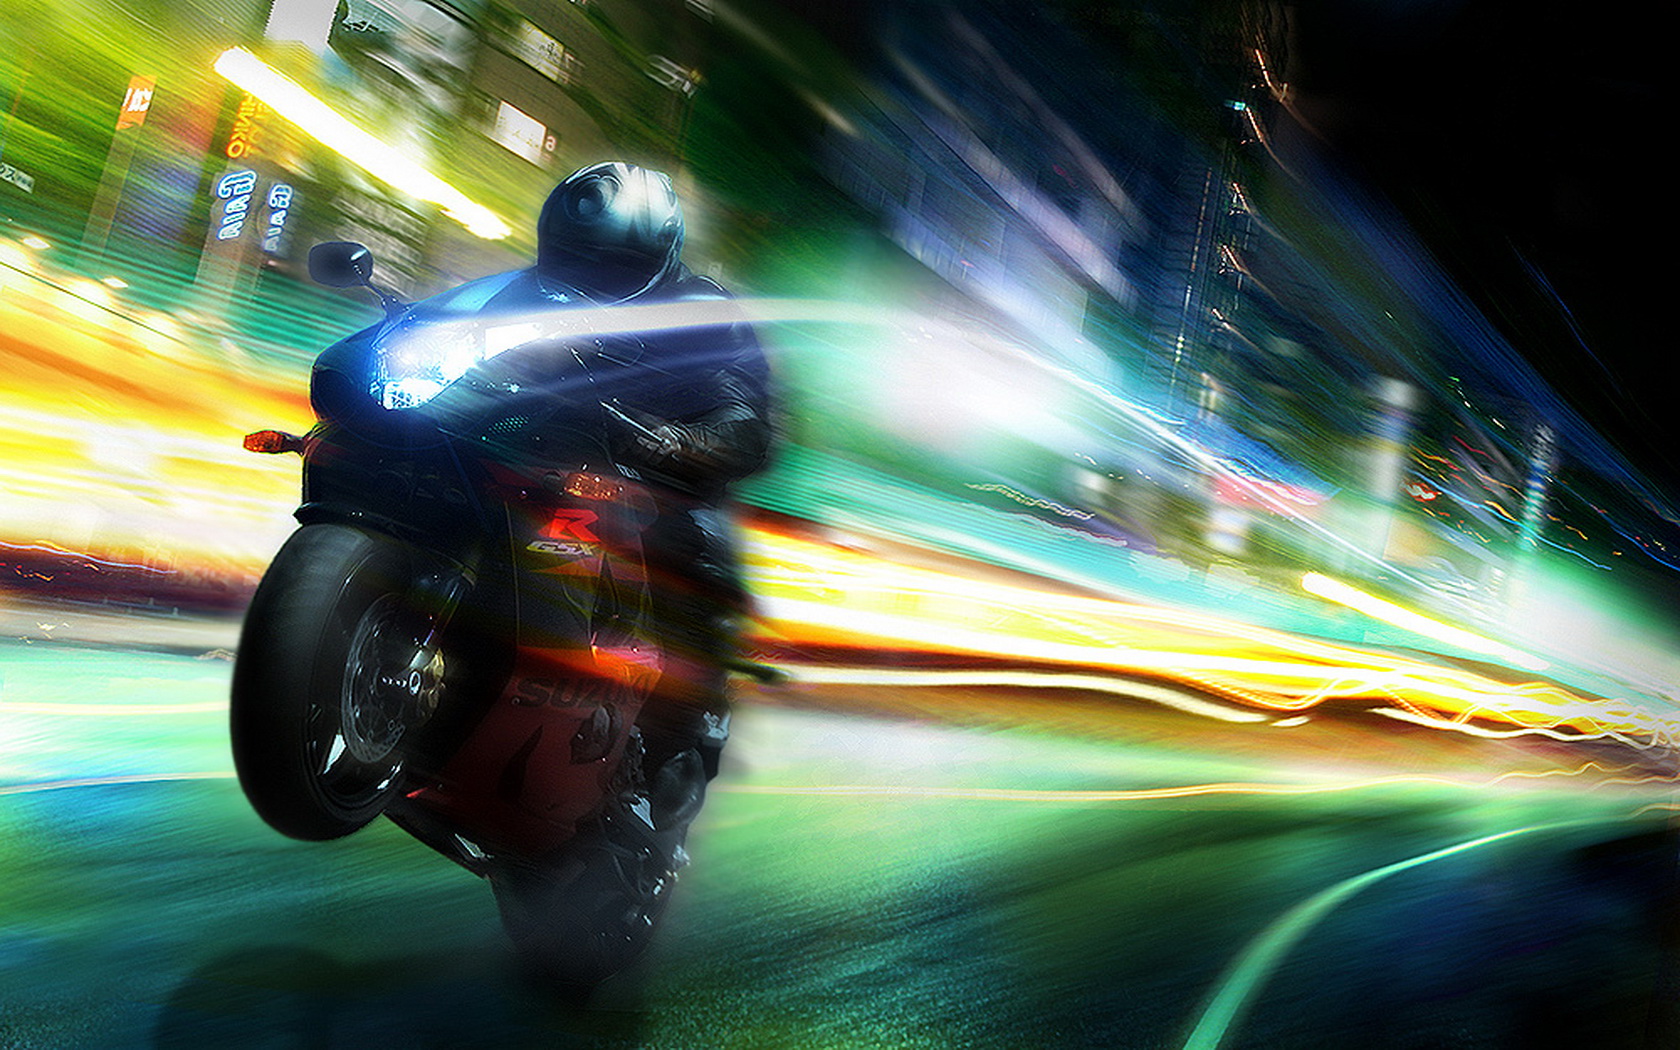 Descarga gratuita de fondo de pantalla para móvil de Motocicletas, Motocicleta, Luz, Vehículos, Noche.